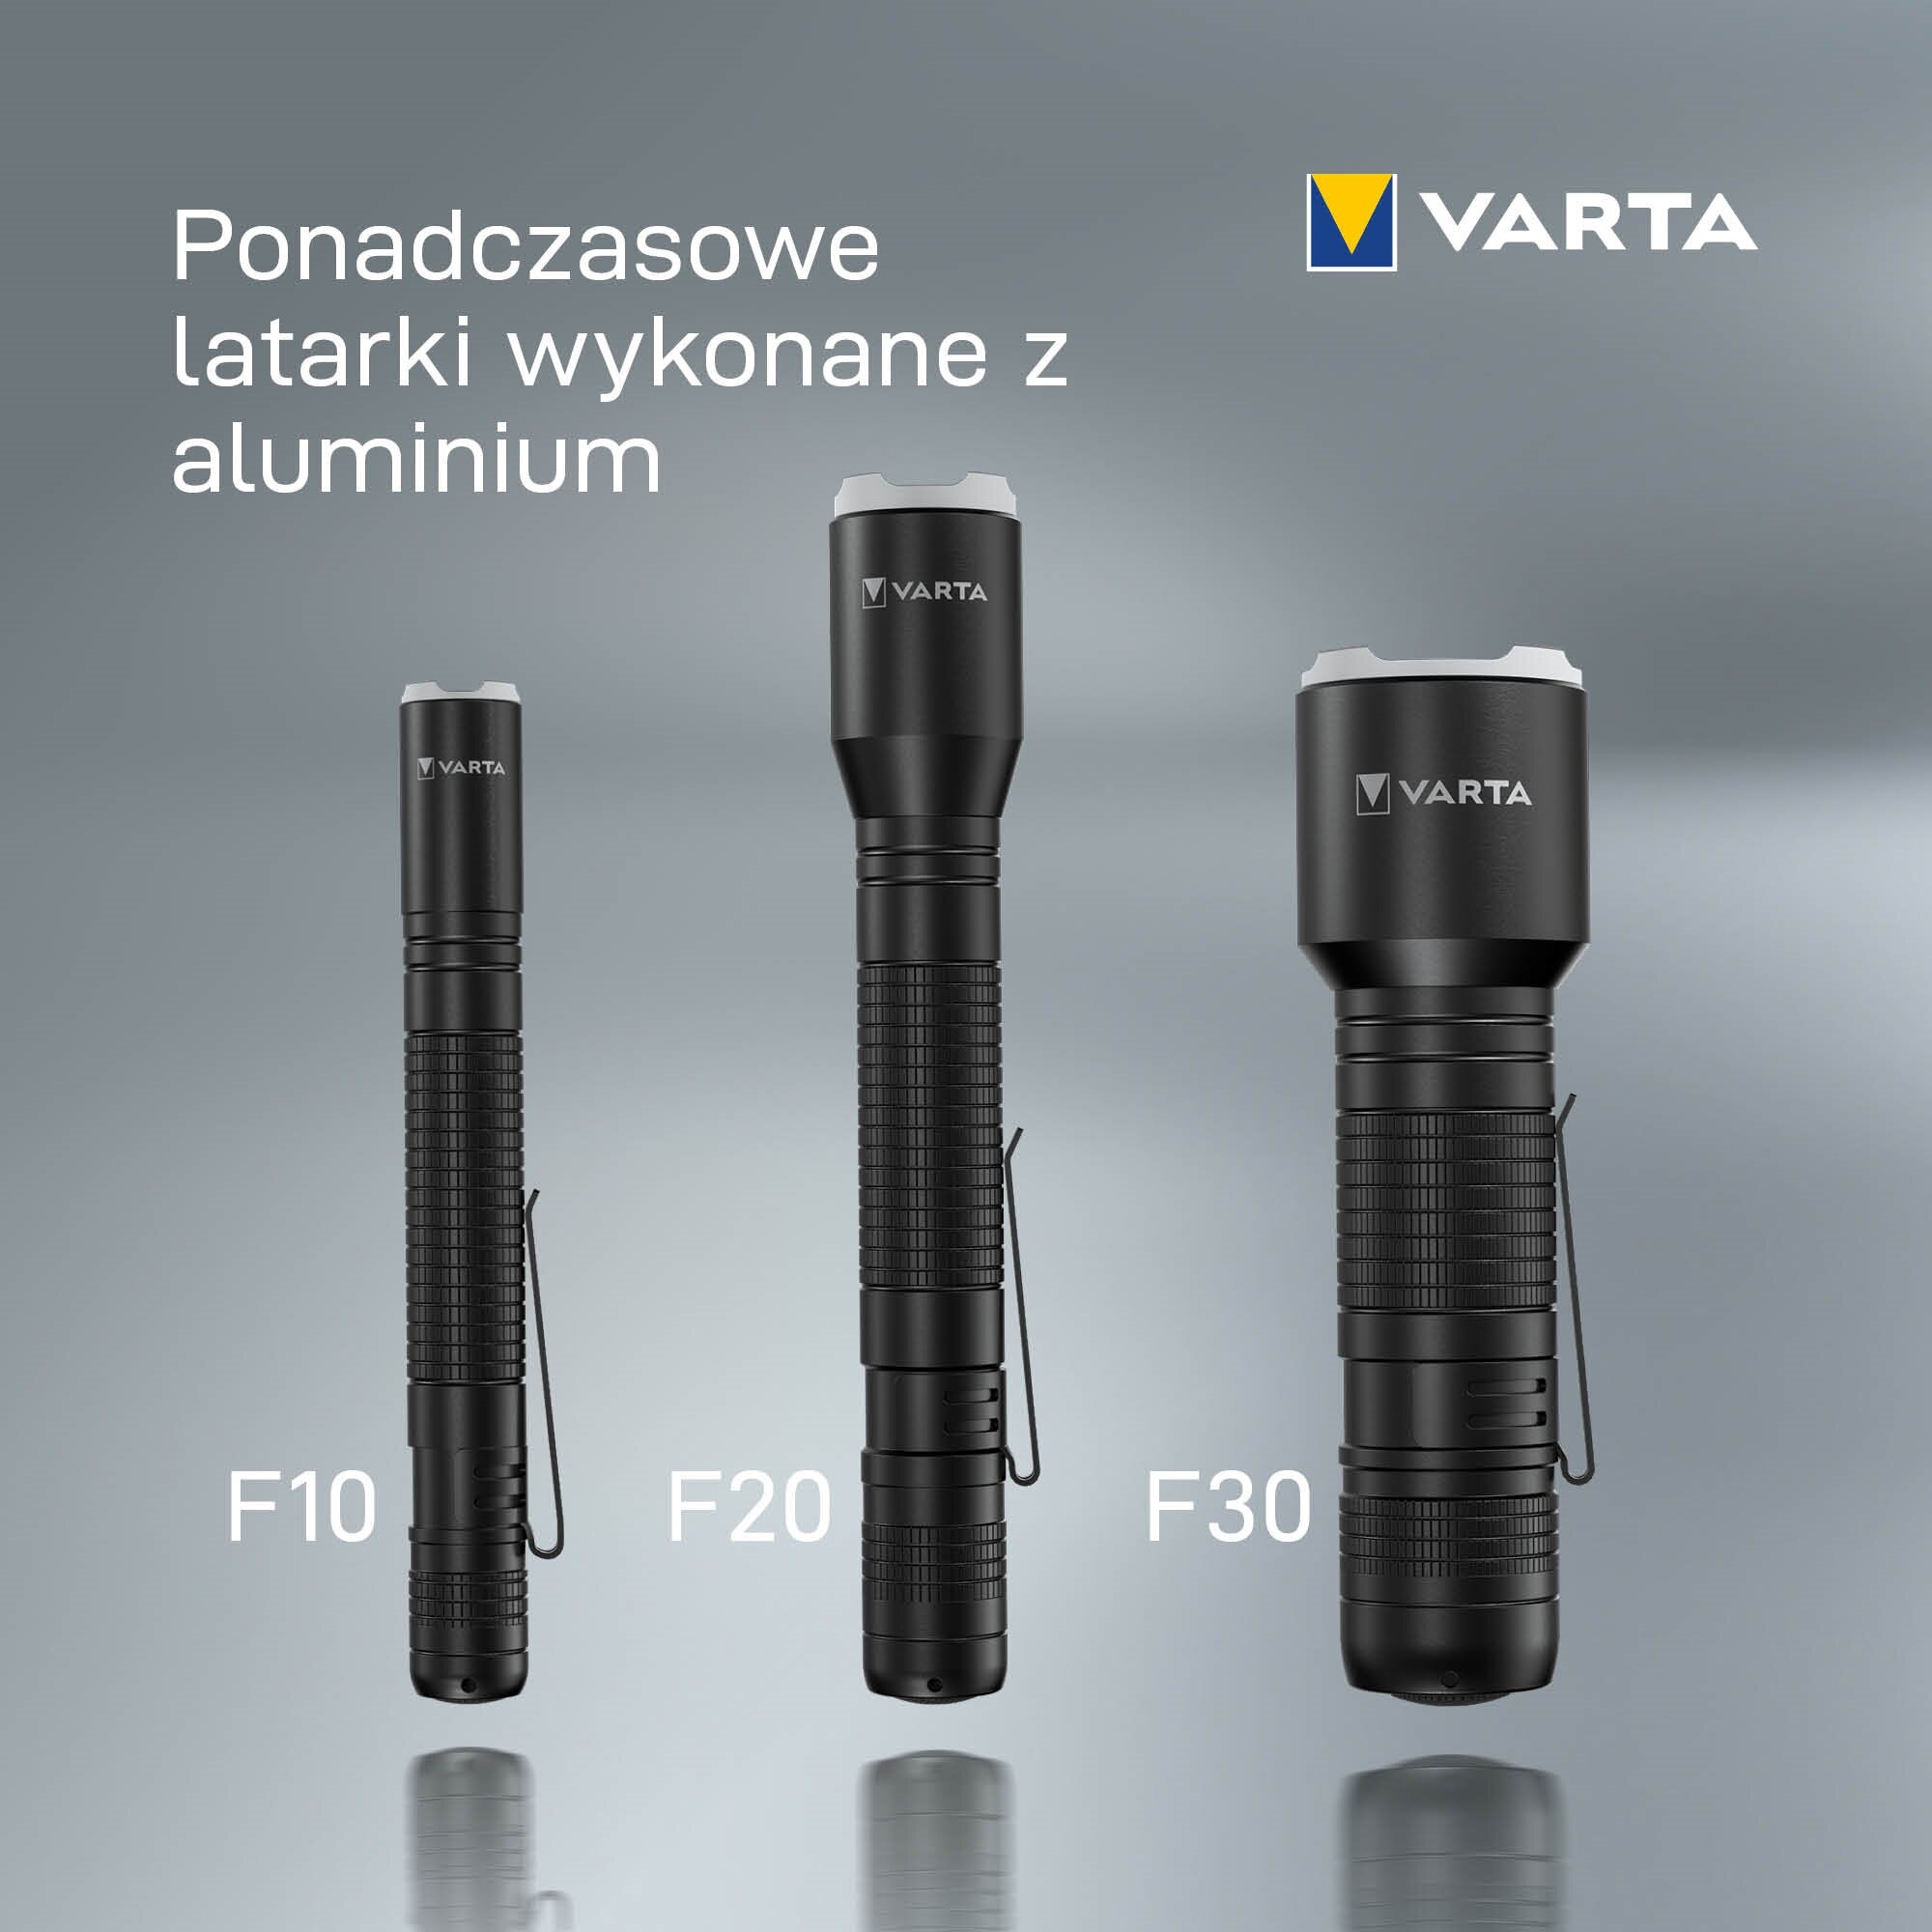 VARTA Aluminium Light F30 Pro Latarka - niskie ceny i opinie w Media Expert